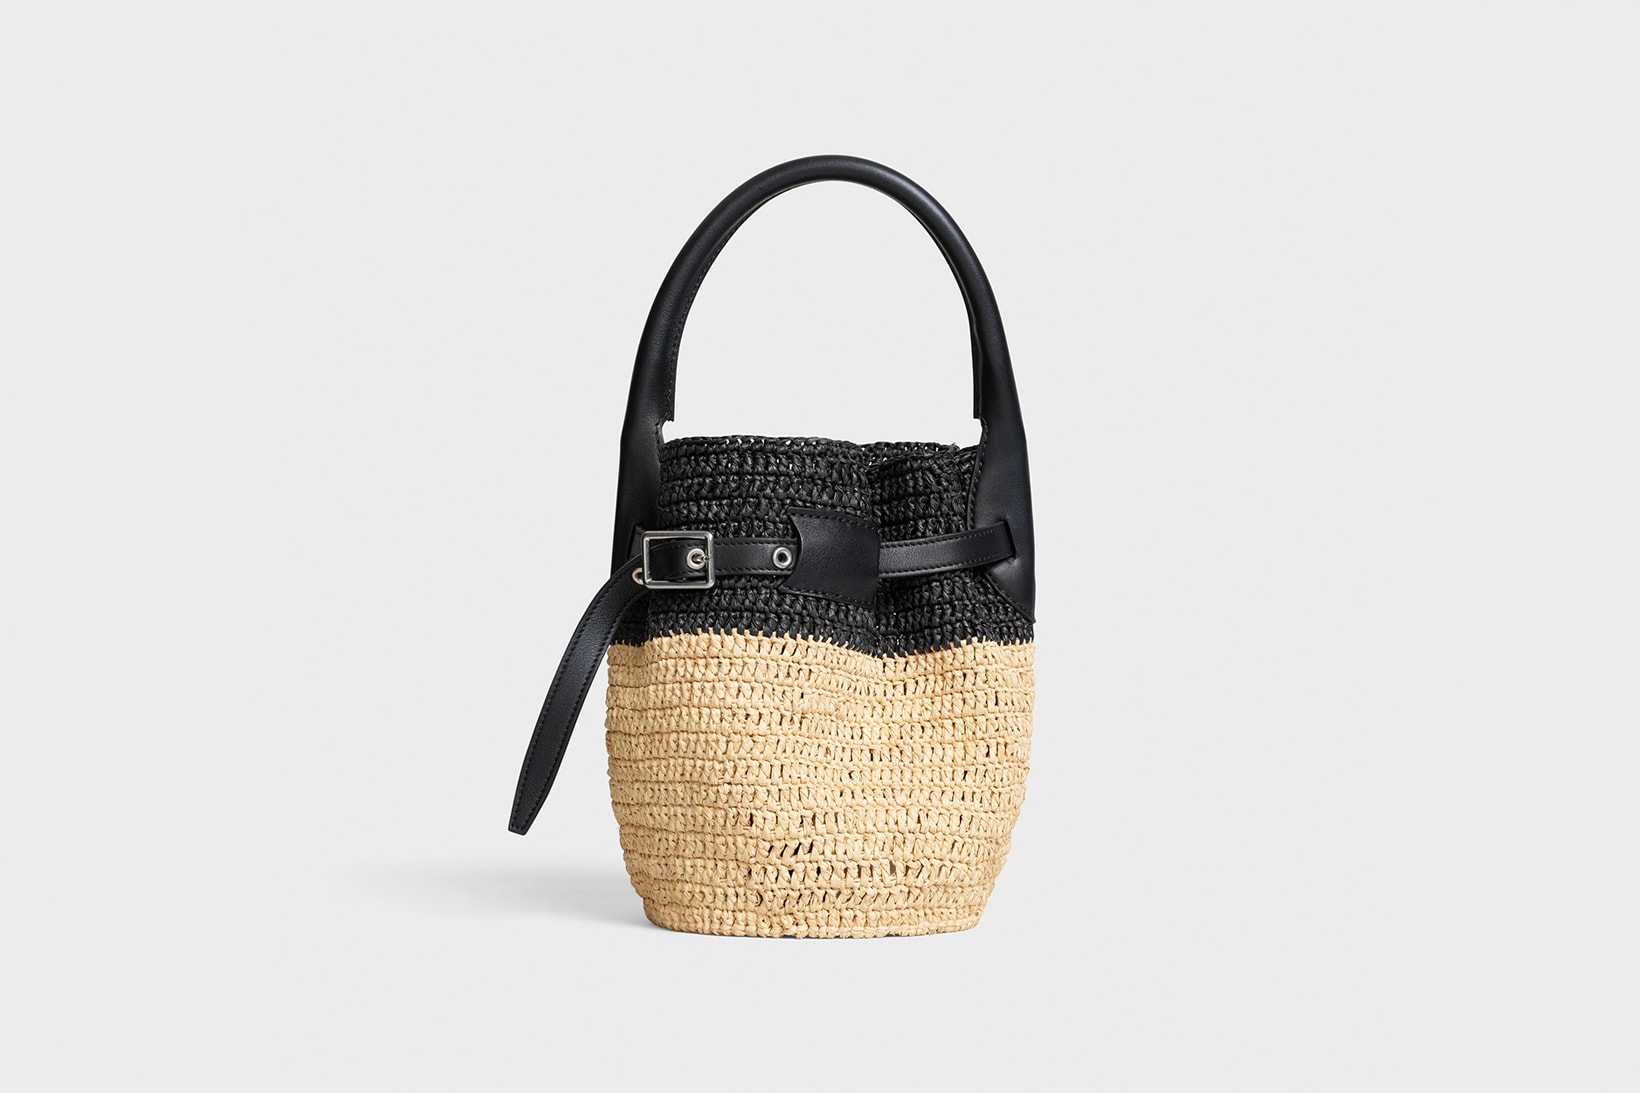 Celine Hedi Slimane Summer 2019 Basket Collection Bucket Bag Black Tan